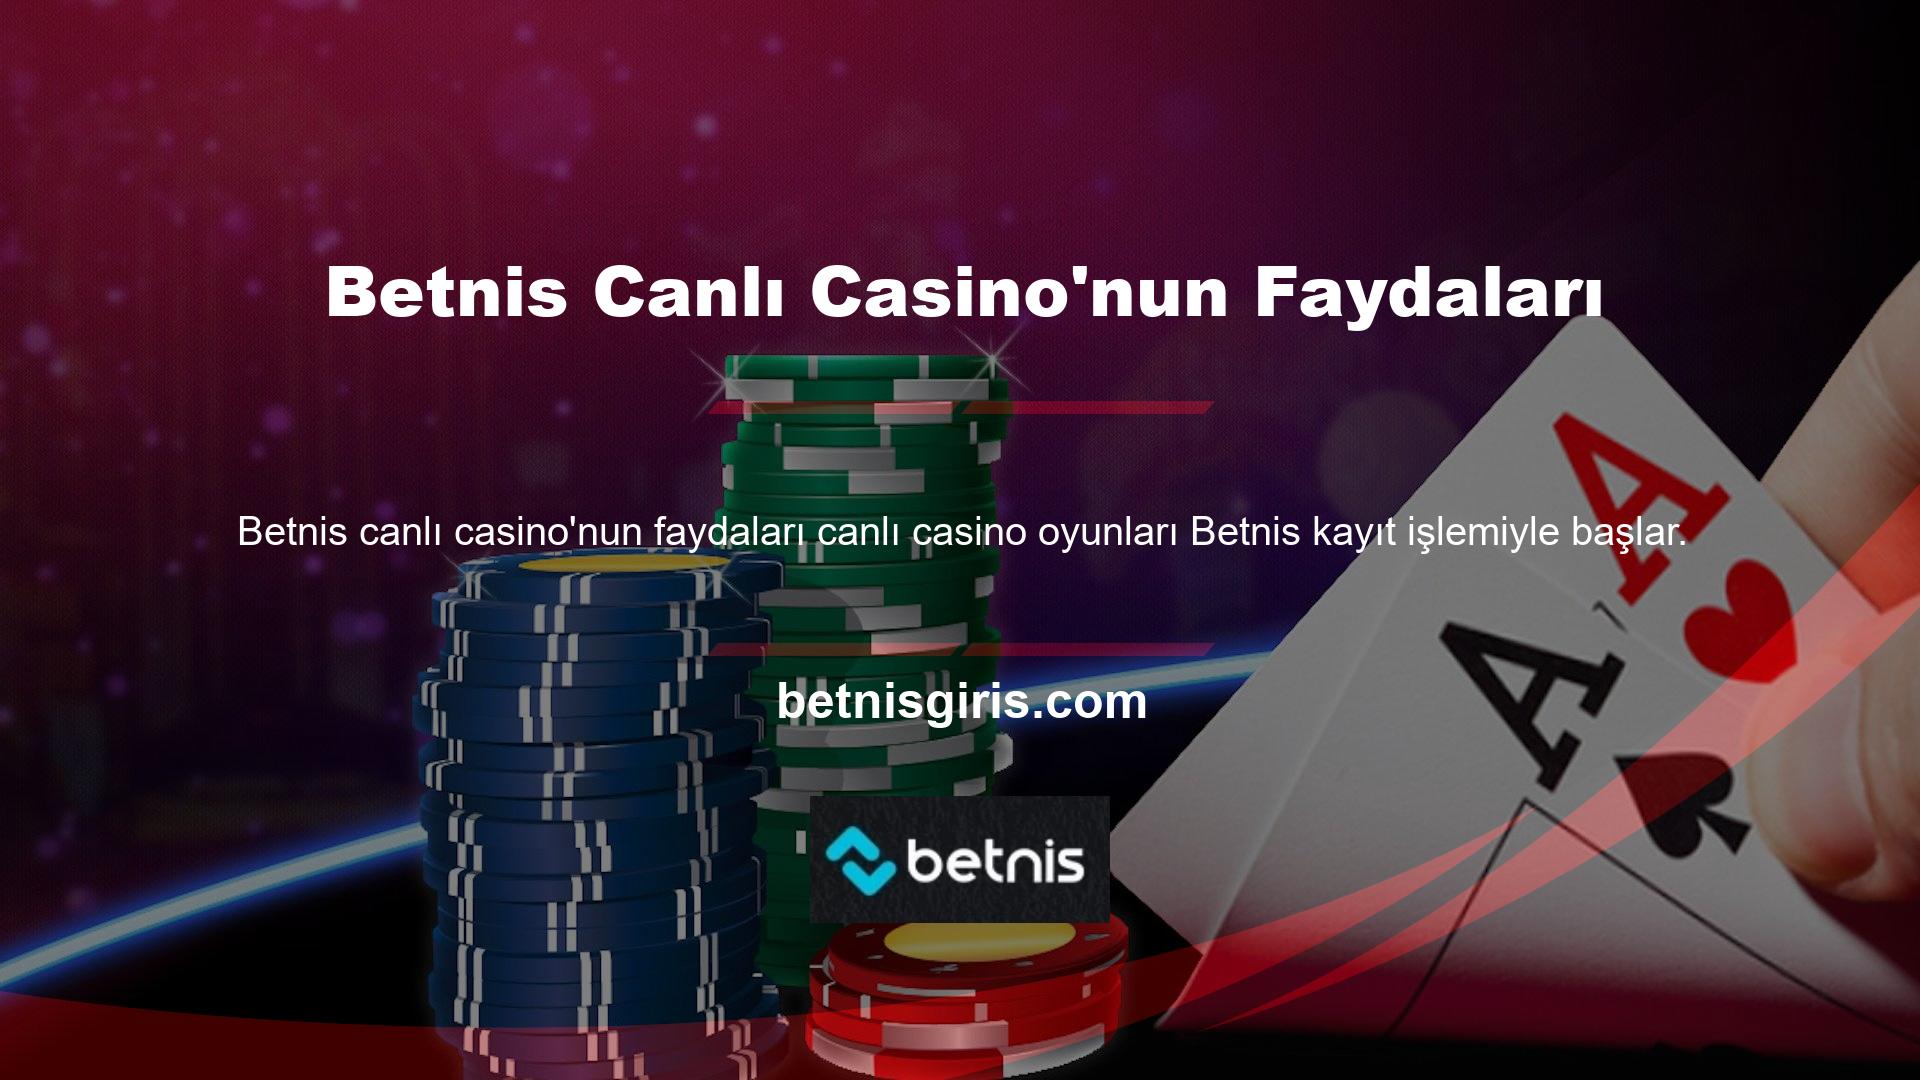 Canlı Casino kategorisinden Betnis Canlı Casino'yu kullanın ve sitenin oyunlarına hemen katılın